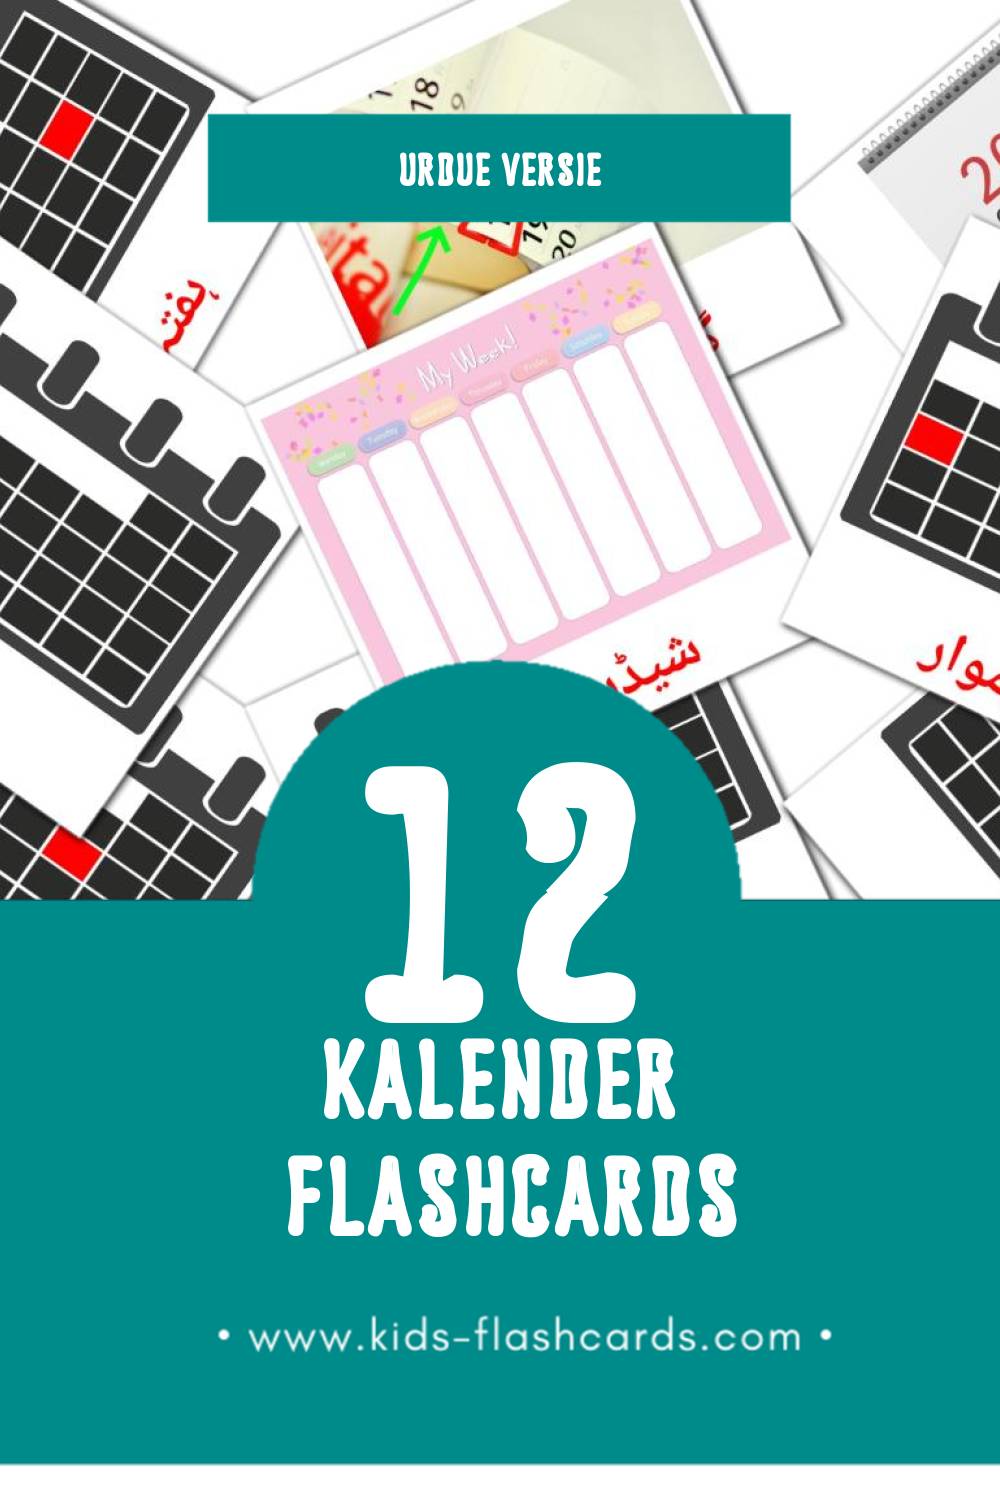 Visuele کیلنڈر Flashcards voor Kleuters (12 kaarten in het Urdu)